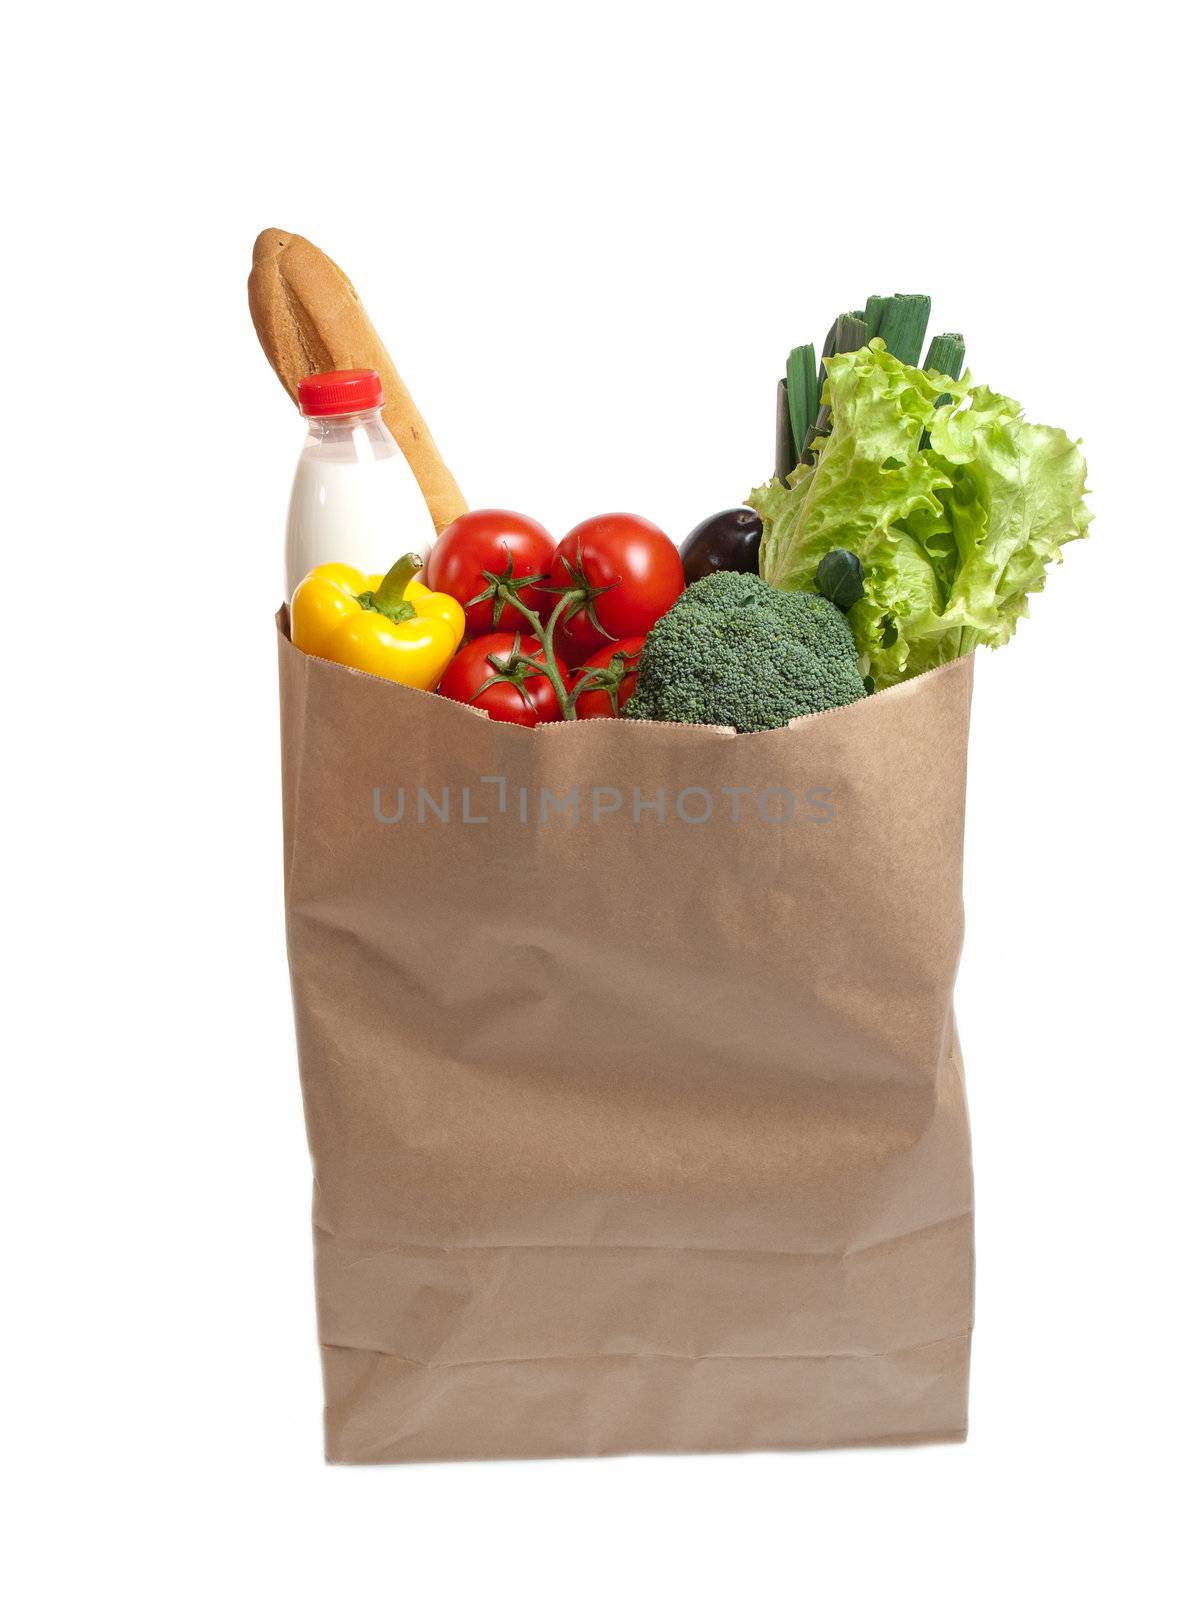 Paper bag full of food